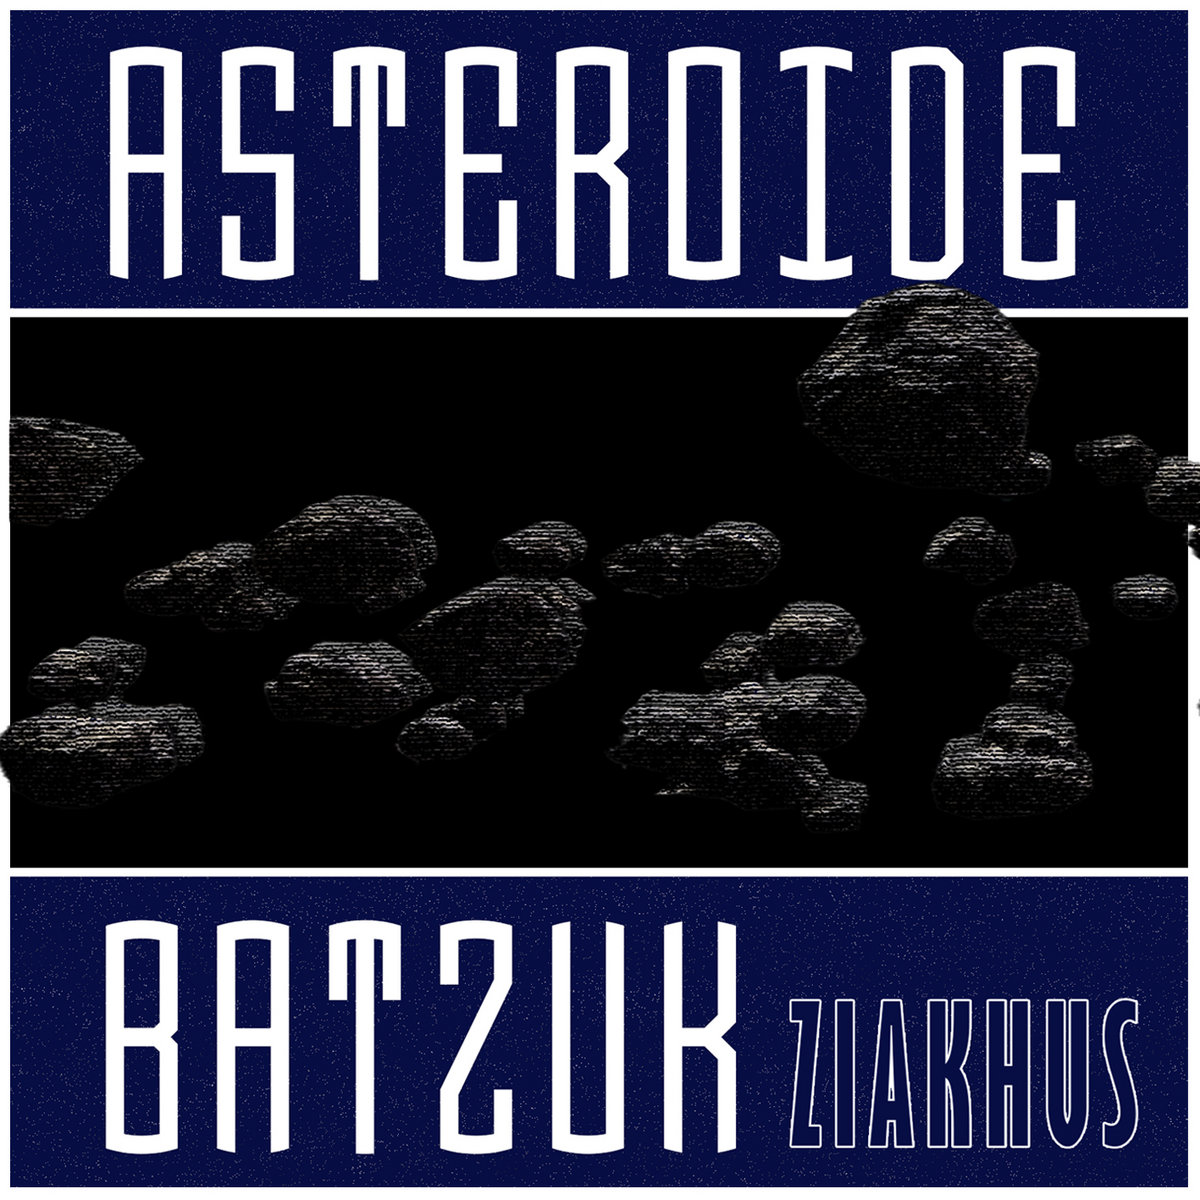 Asteroide batzuk